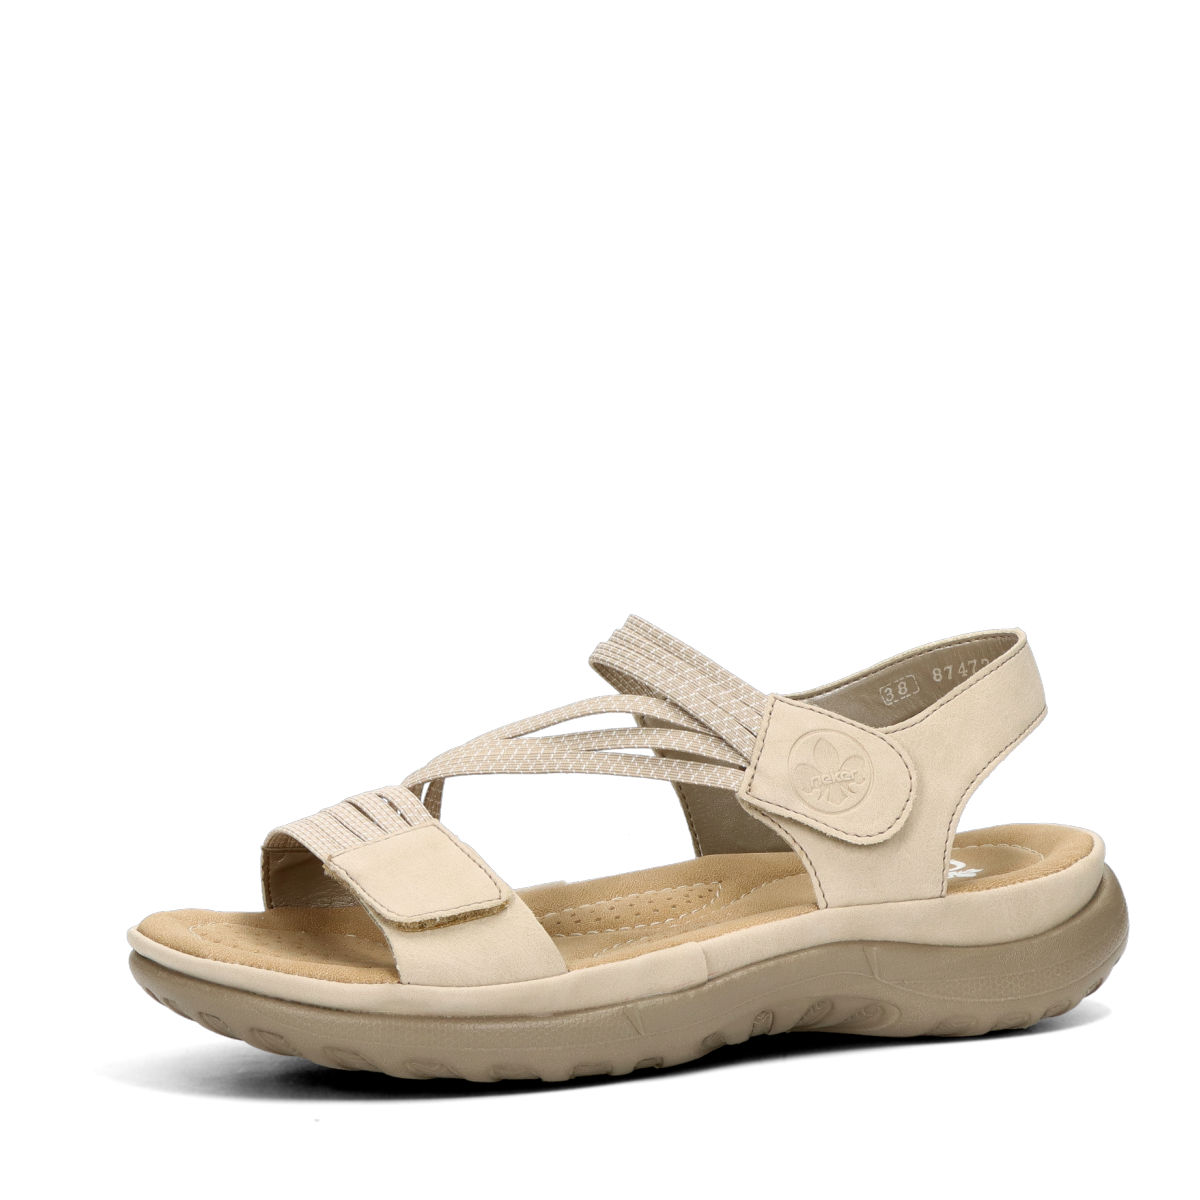 tempo leder junk Rieker women's comfortable sandals - beige | Robel.shoes